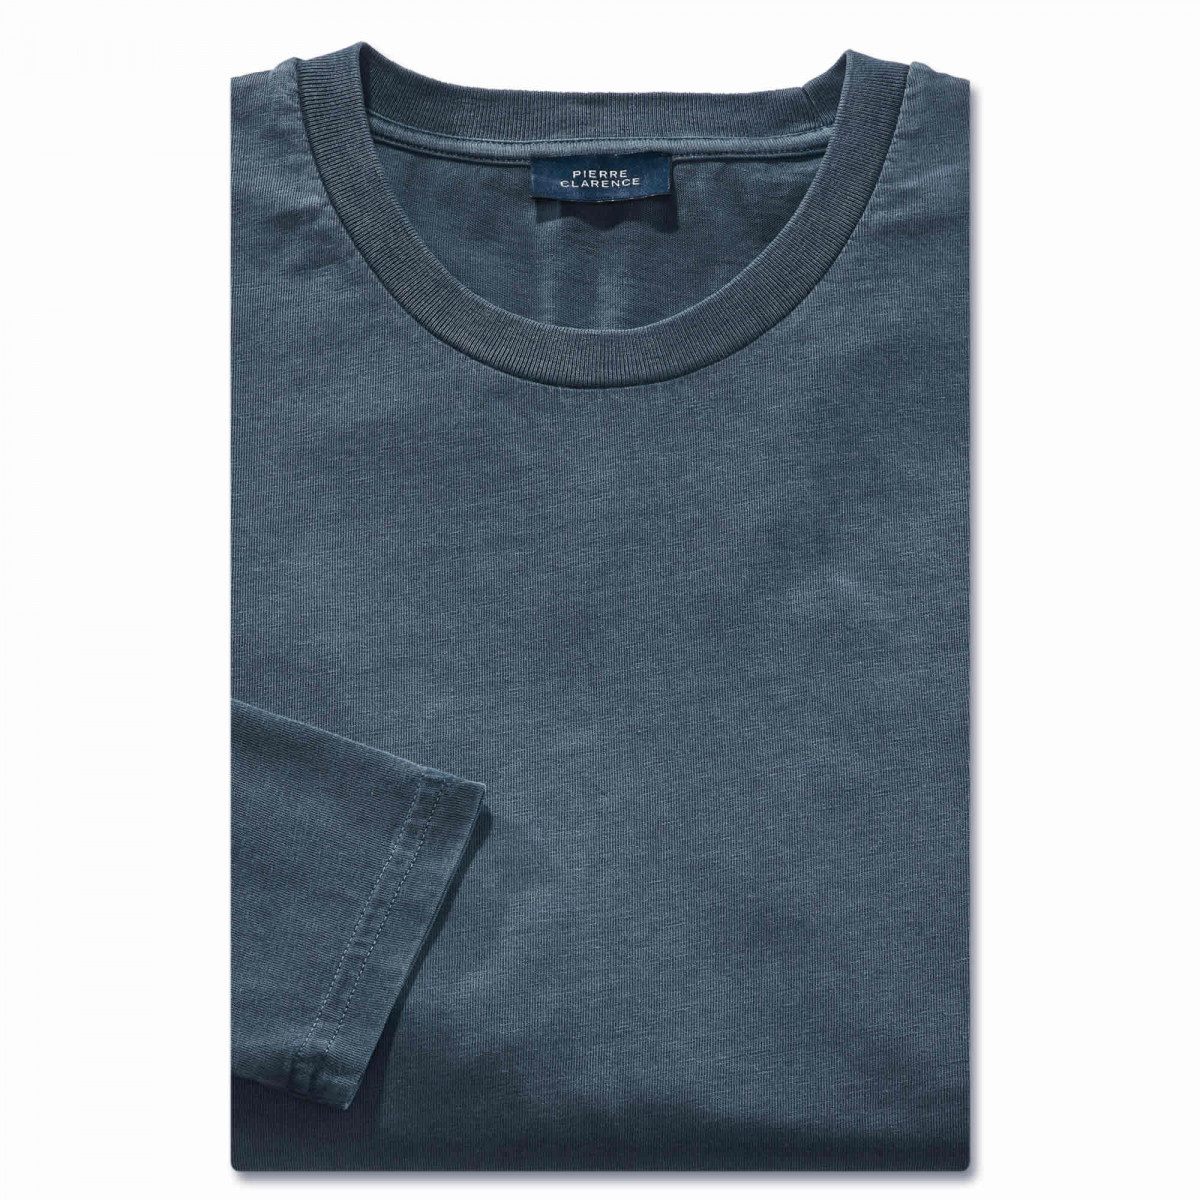 Tee-shirt coton 128/132 (3XL) Bleu